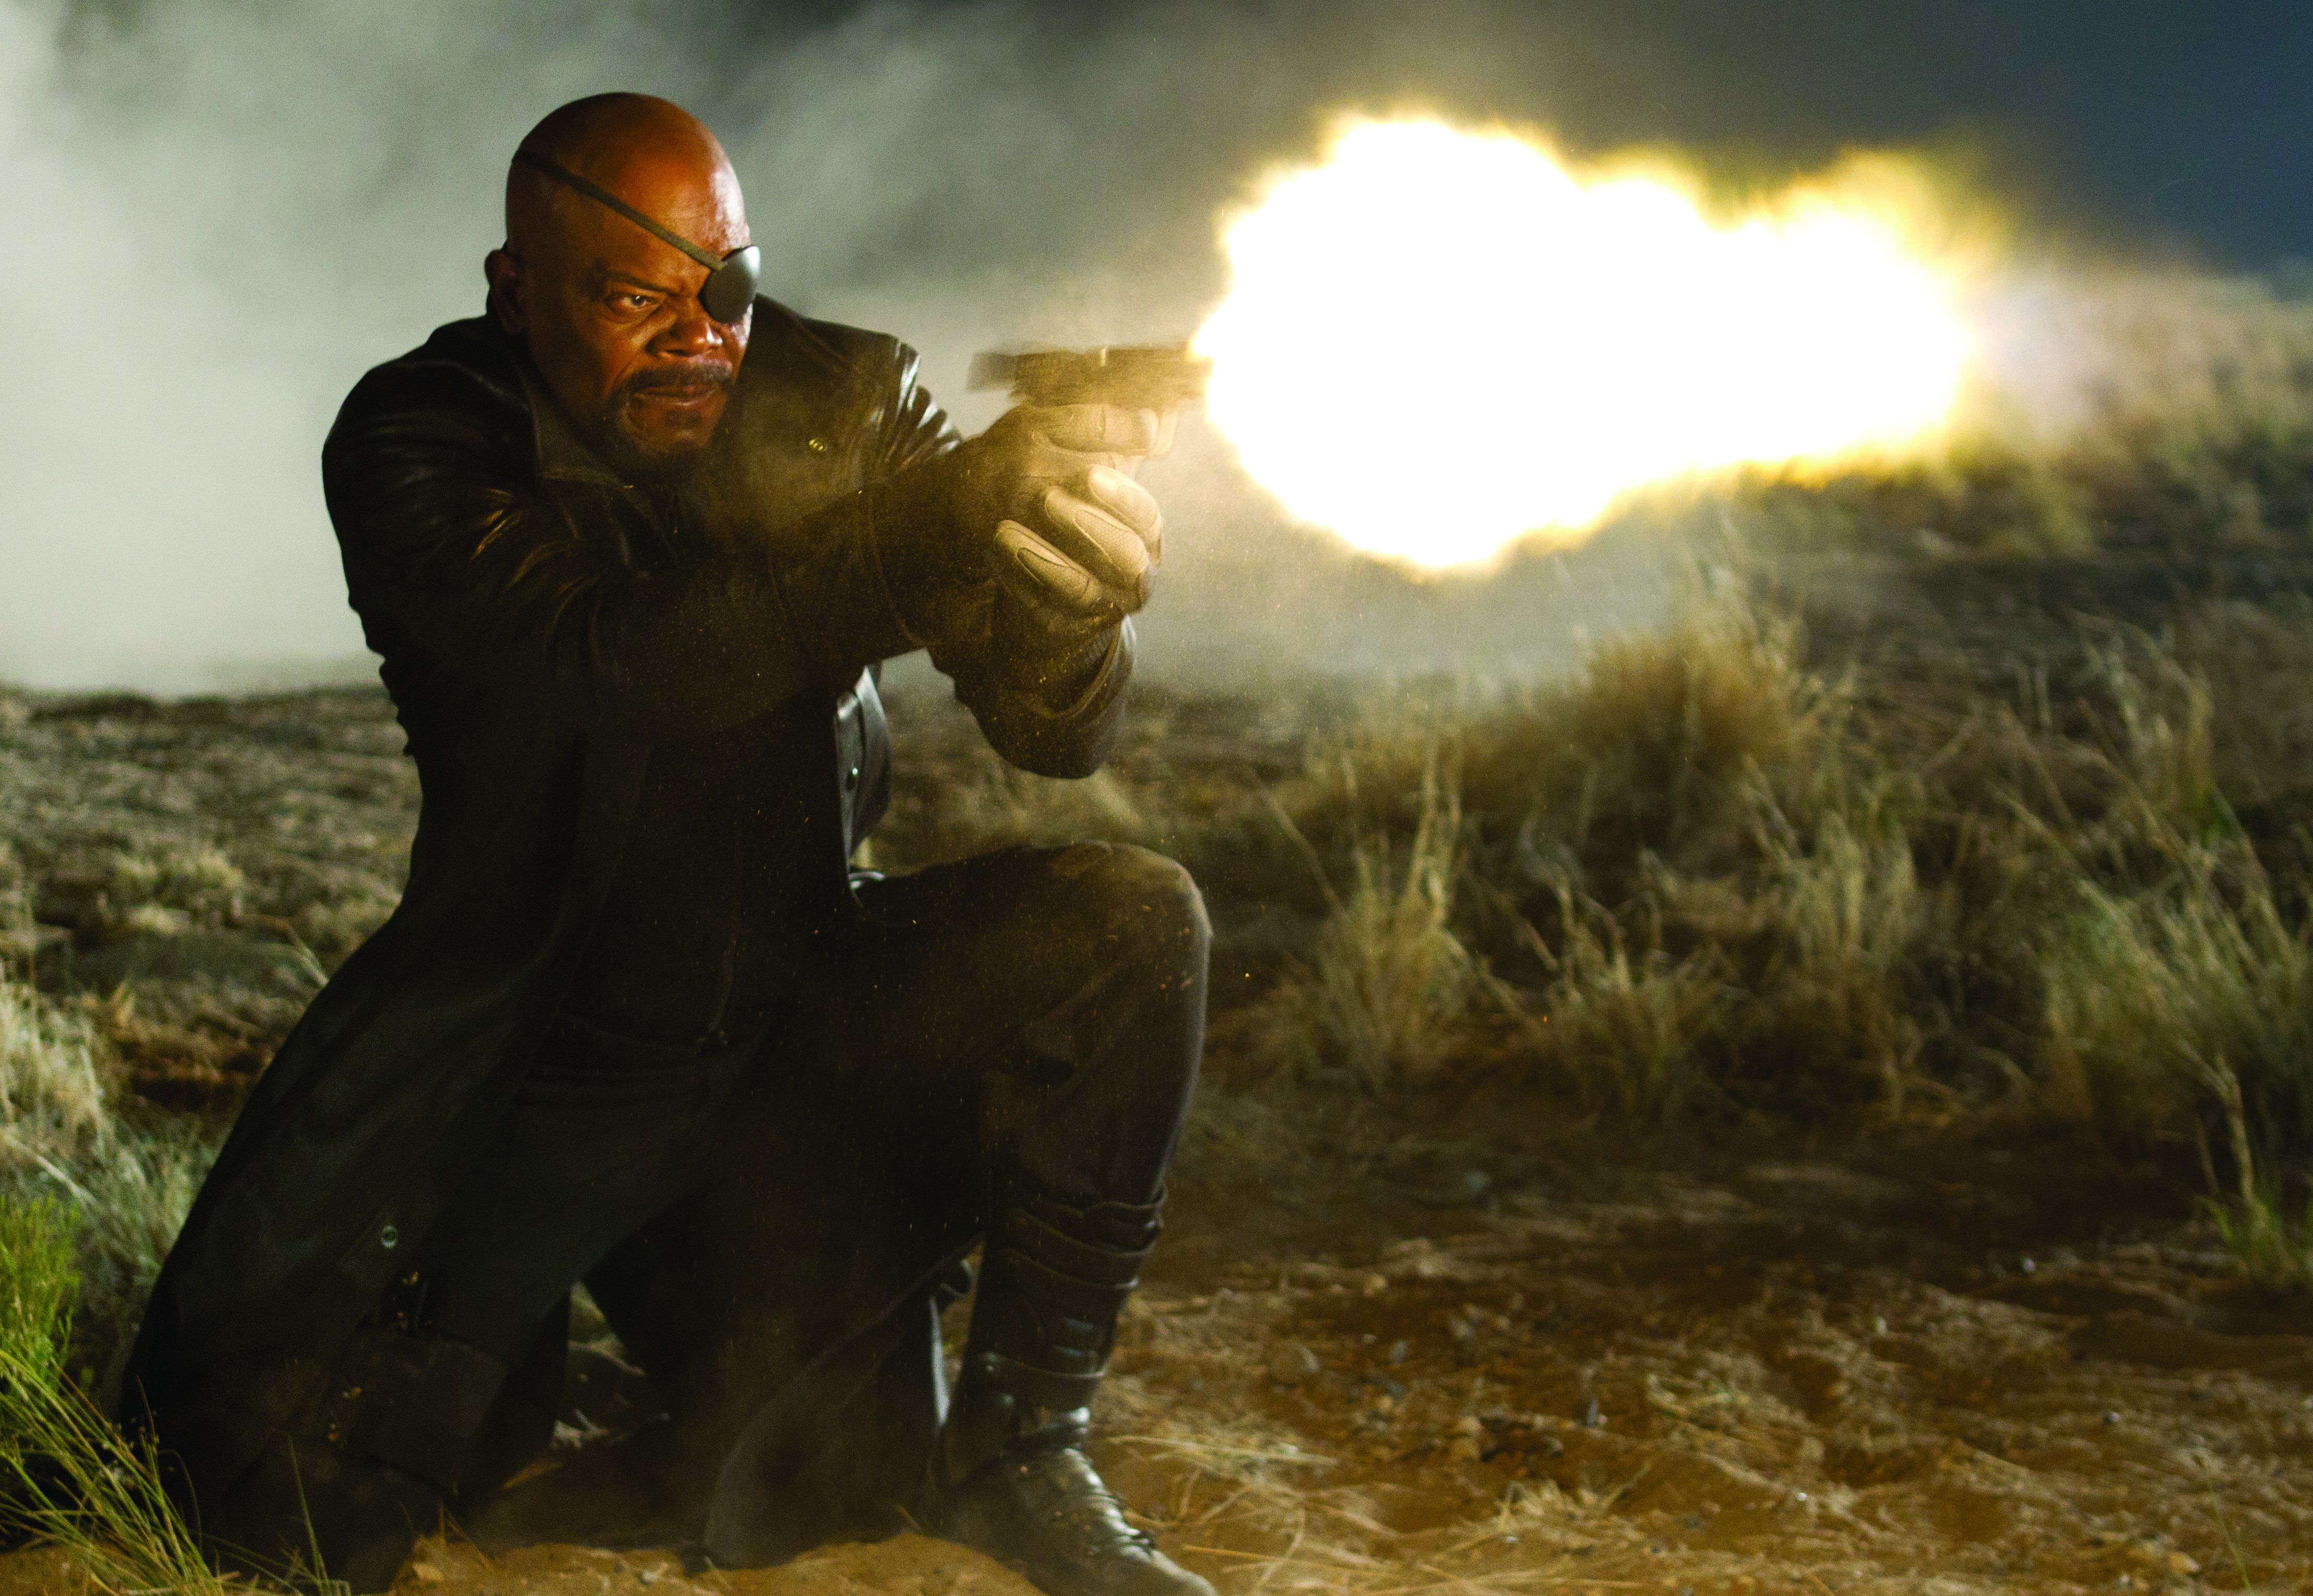 Nick Fury fires gun, The Avengers, part 1